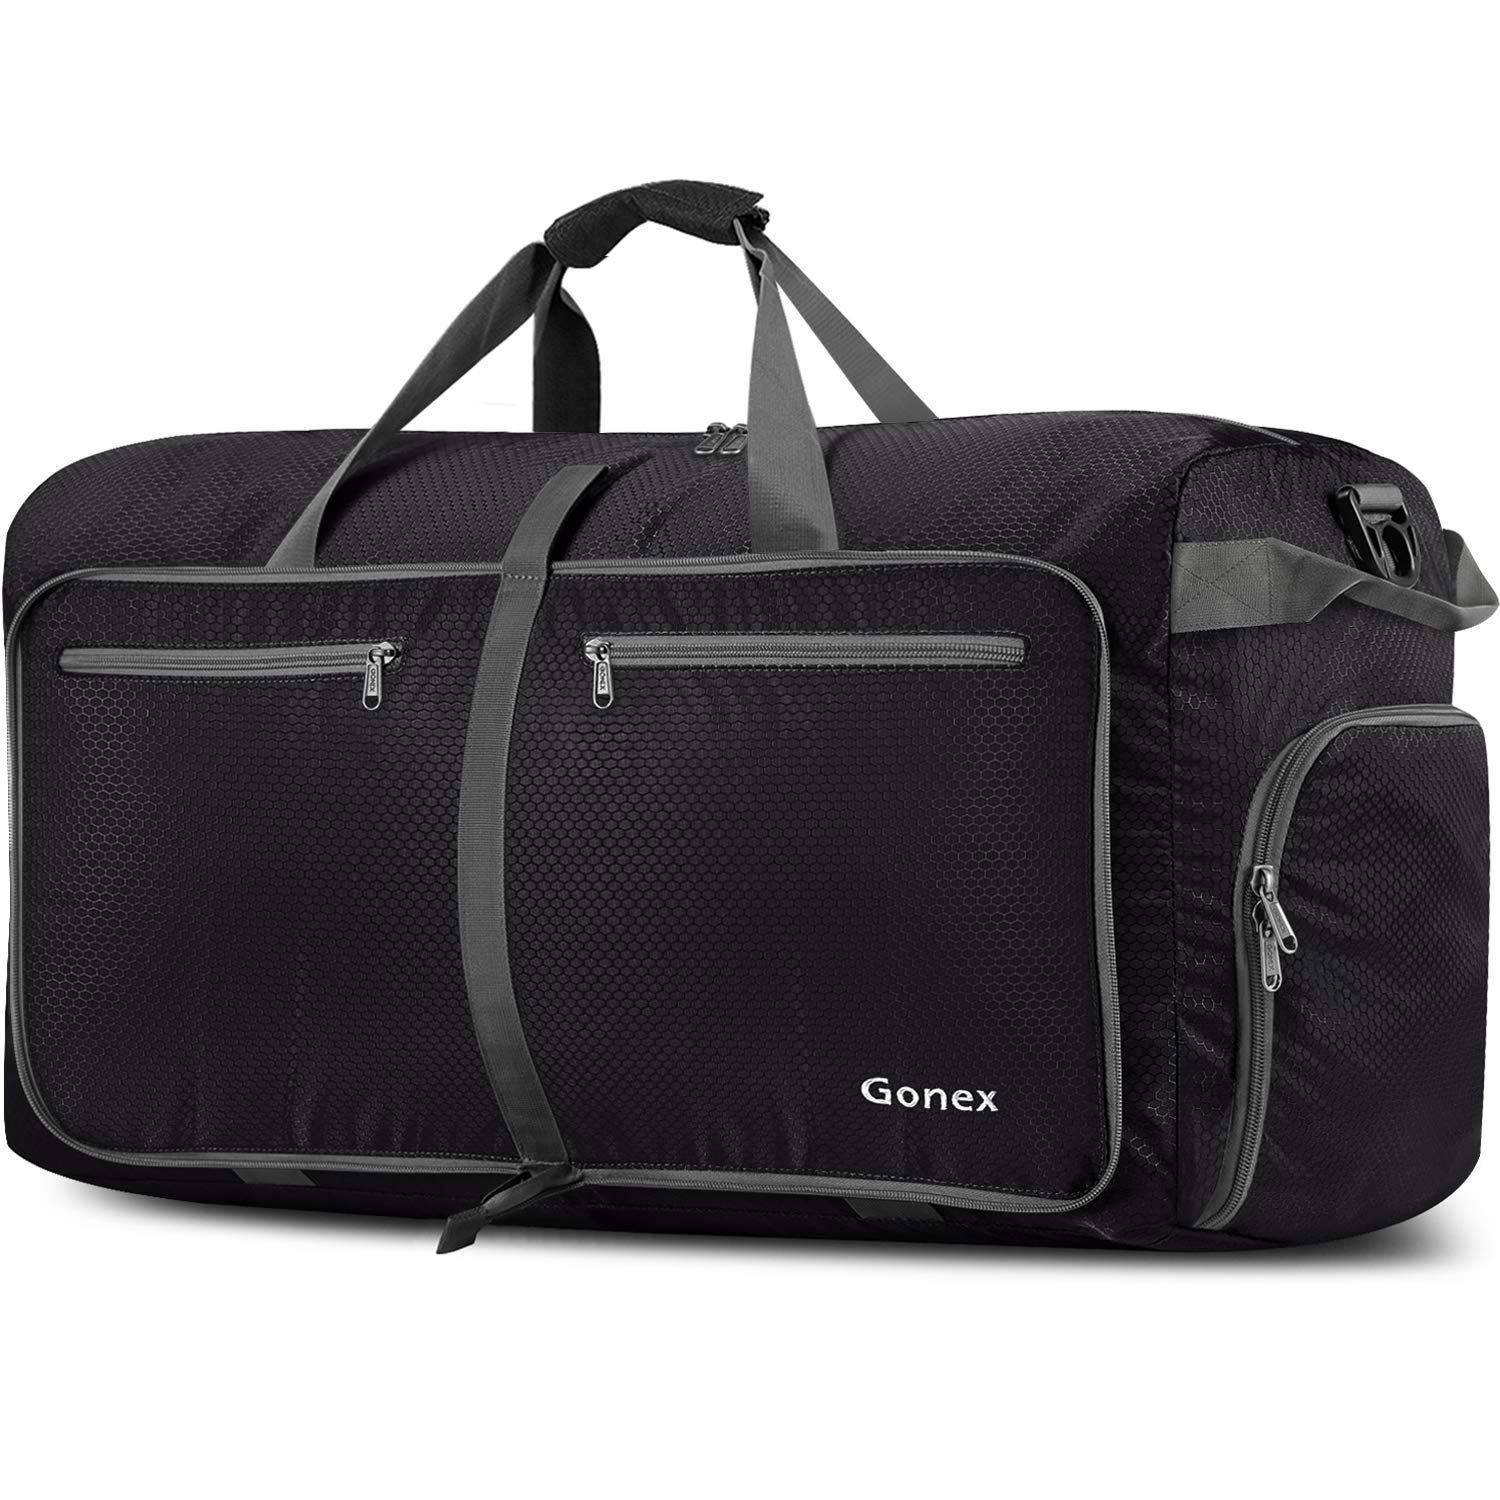 Gonex 60L foldable travel duffel bag